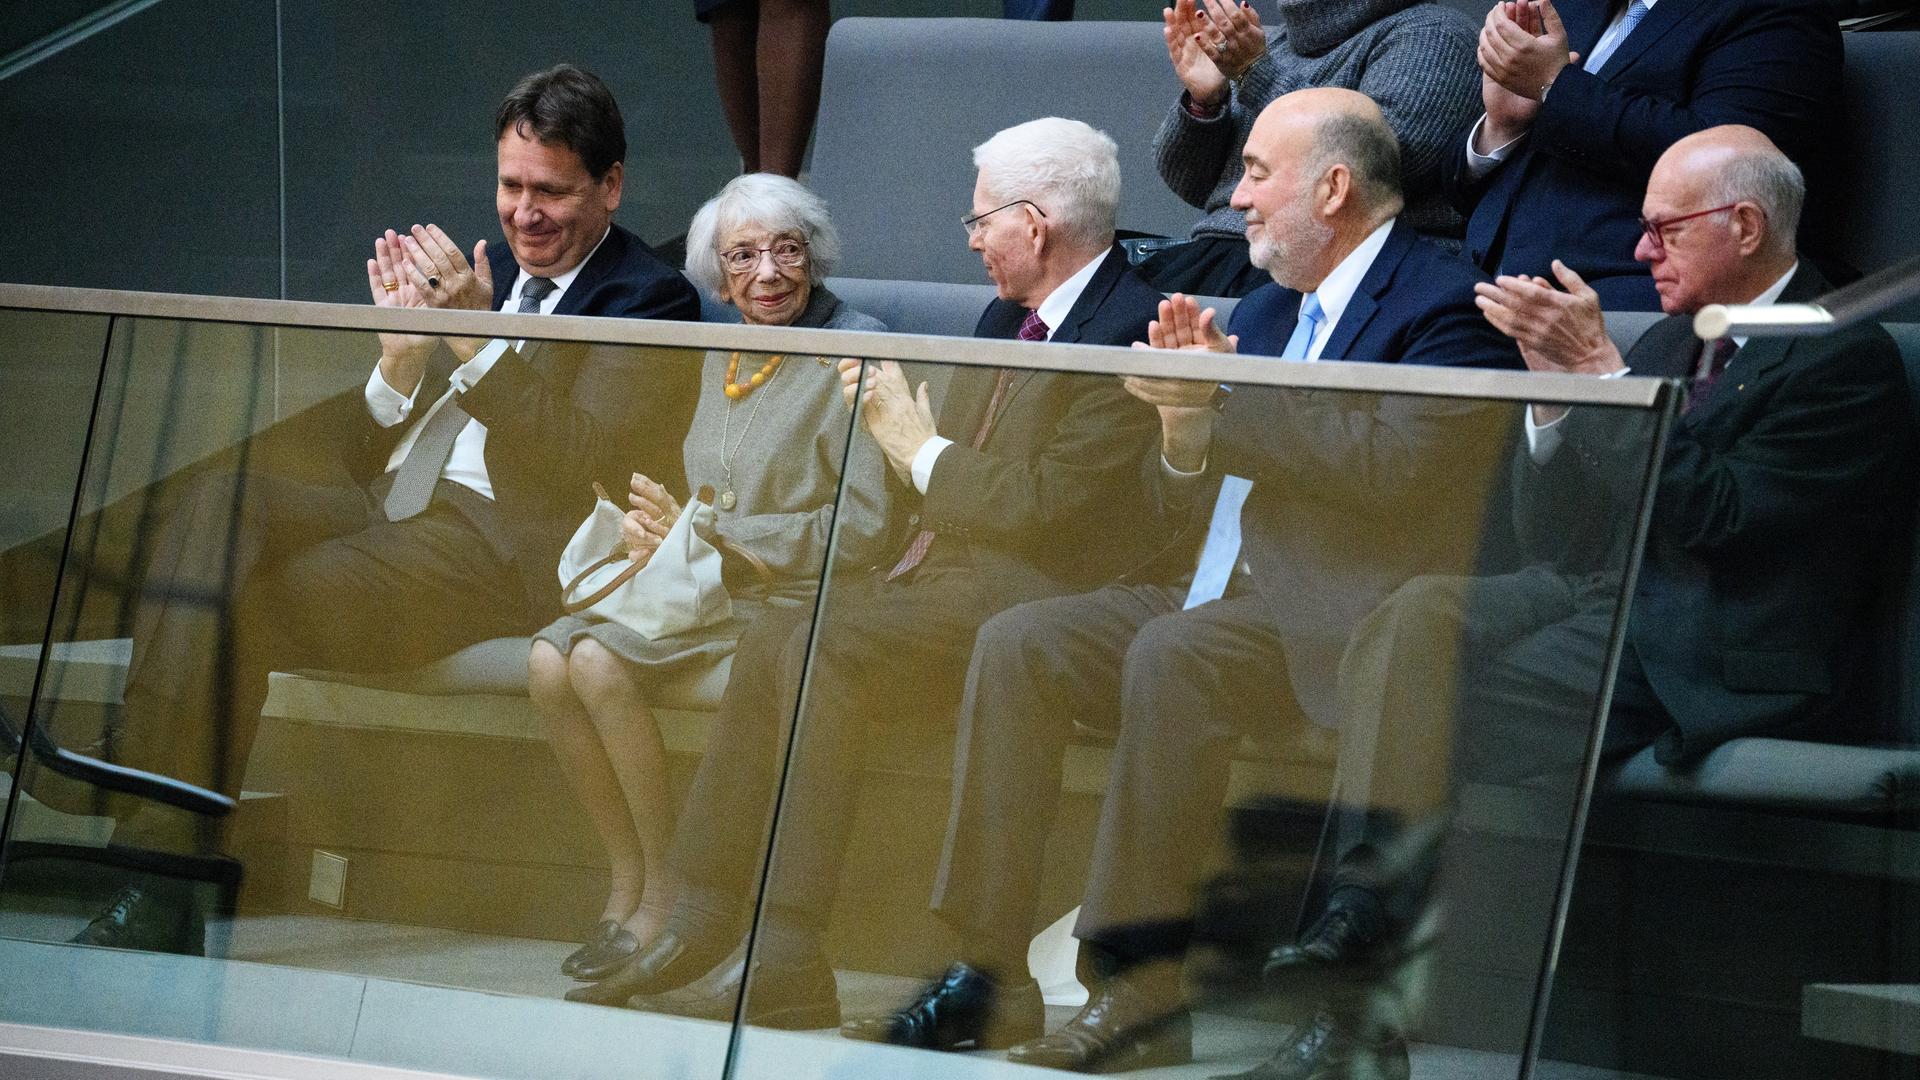 Die Berliner Holocaust-Überlebende Margot Friedländer, nimmt als Gast an der Plenarsitzung im Deutschen Bundestag teil. Sie sitzt auf der Ehrentribüne, wo ihr weitere Gäste der Debatte applaudieren.